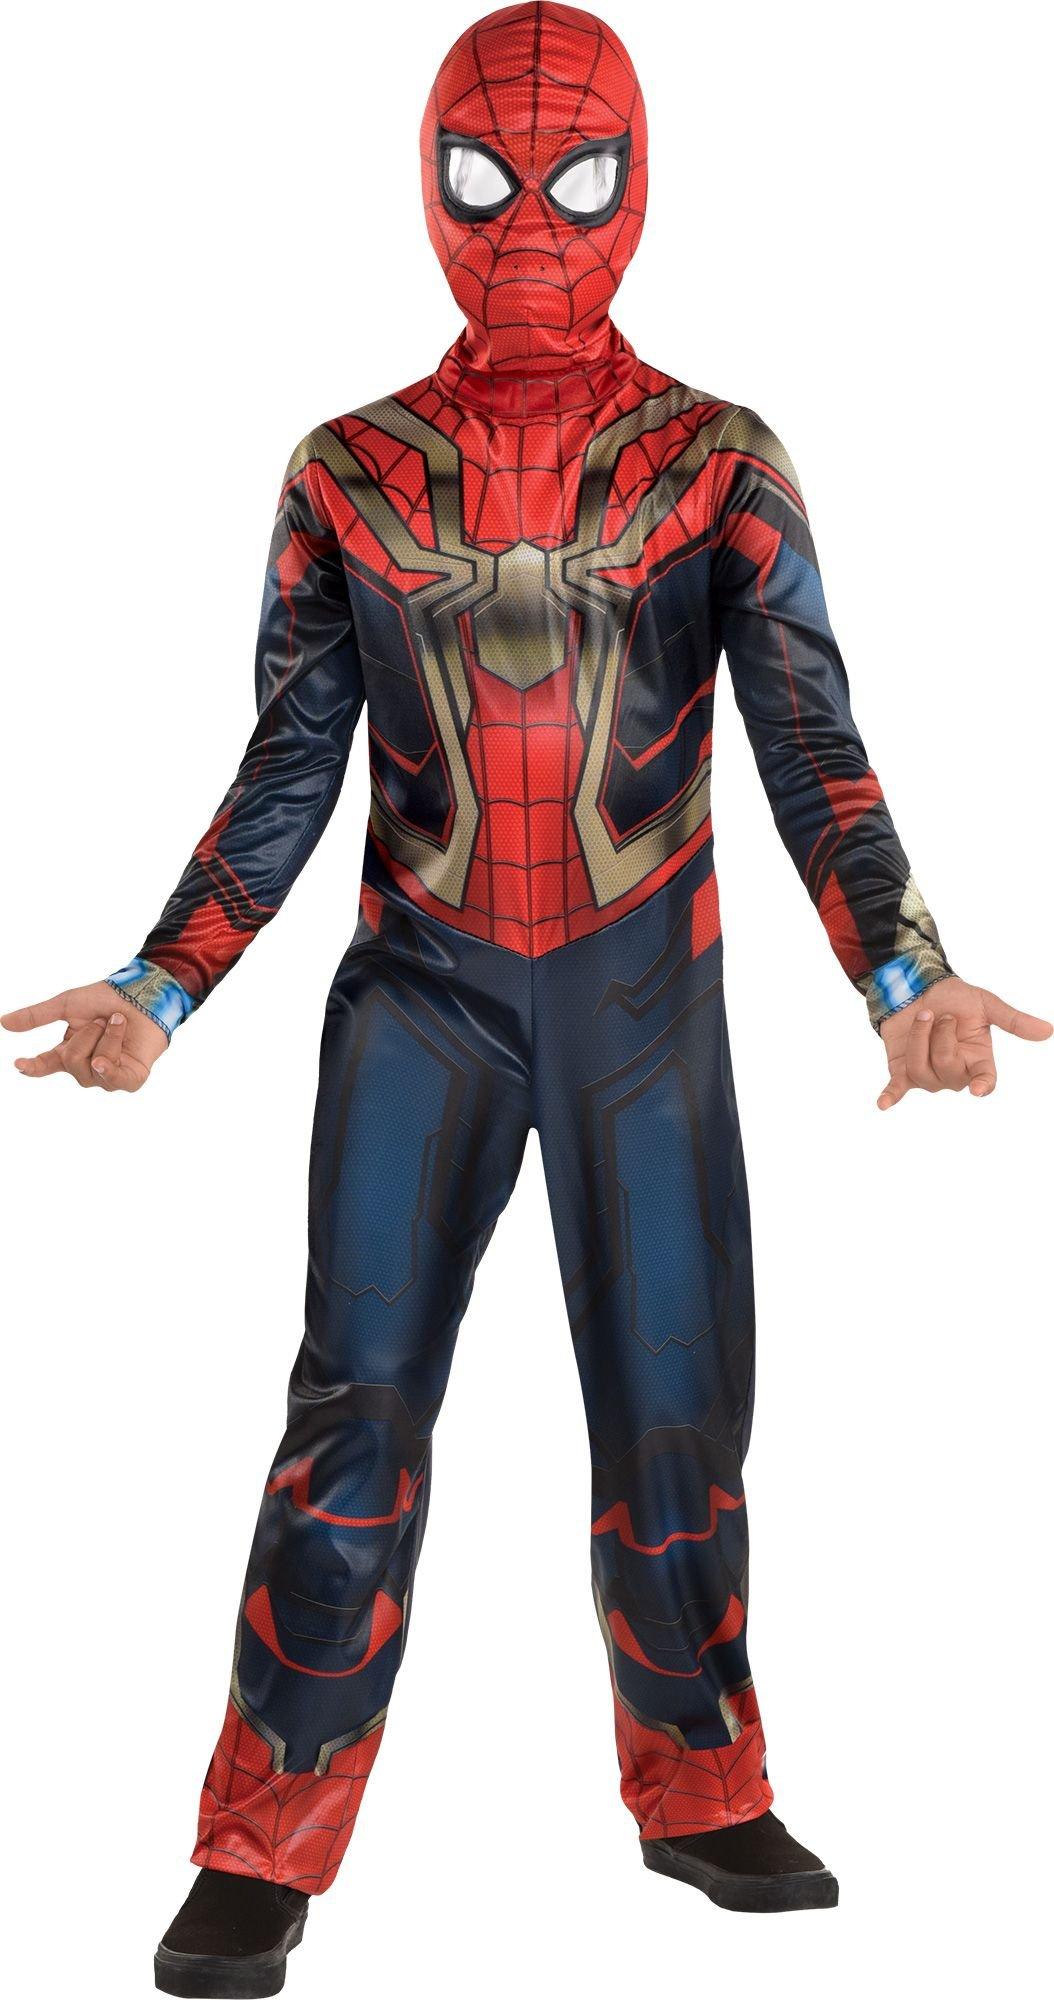 Graag gedaan Contractie Voornaamwoord Kids' Spider-Man Costume - Spider-Man: No Way Home | Party City